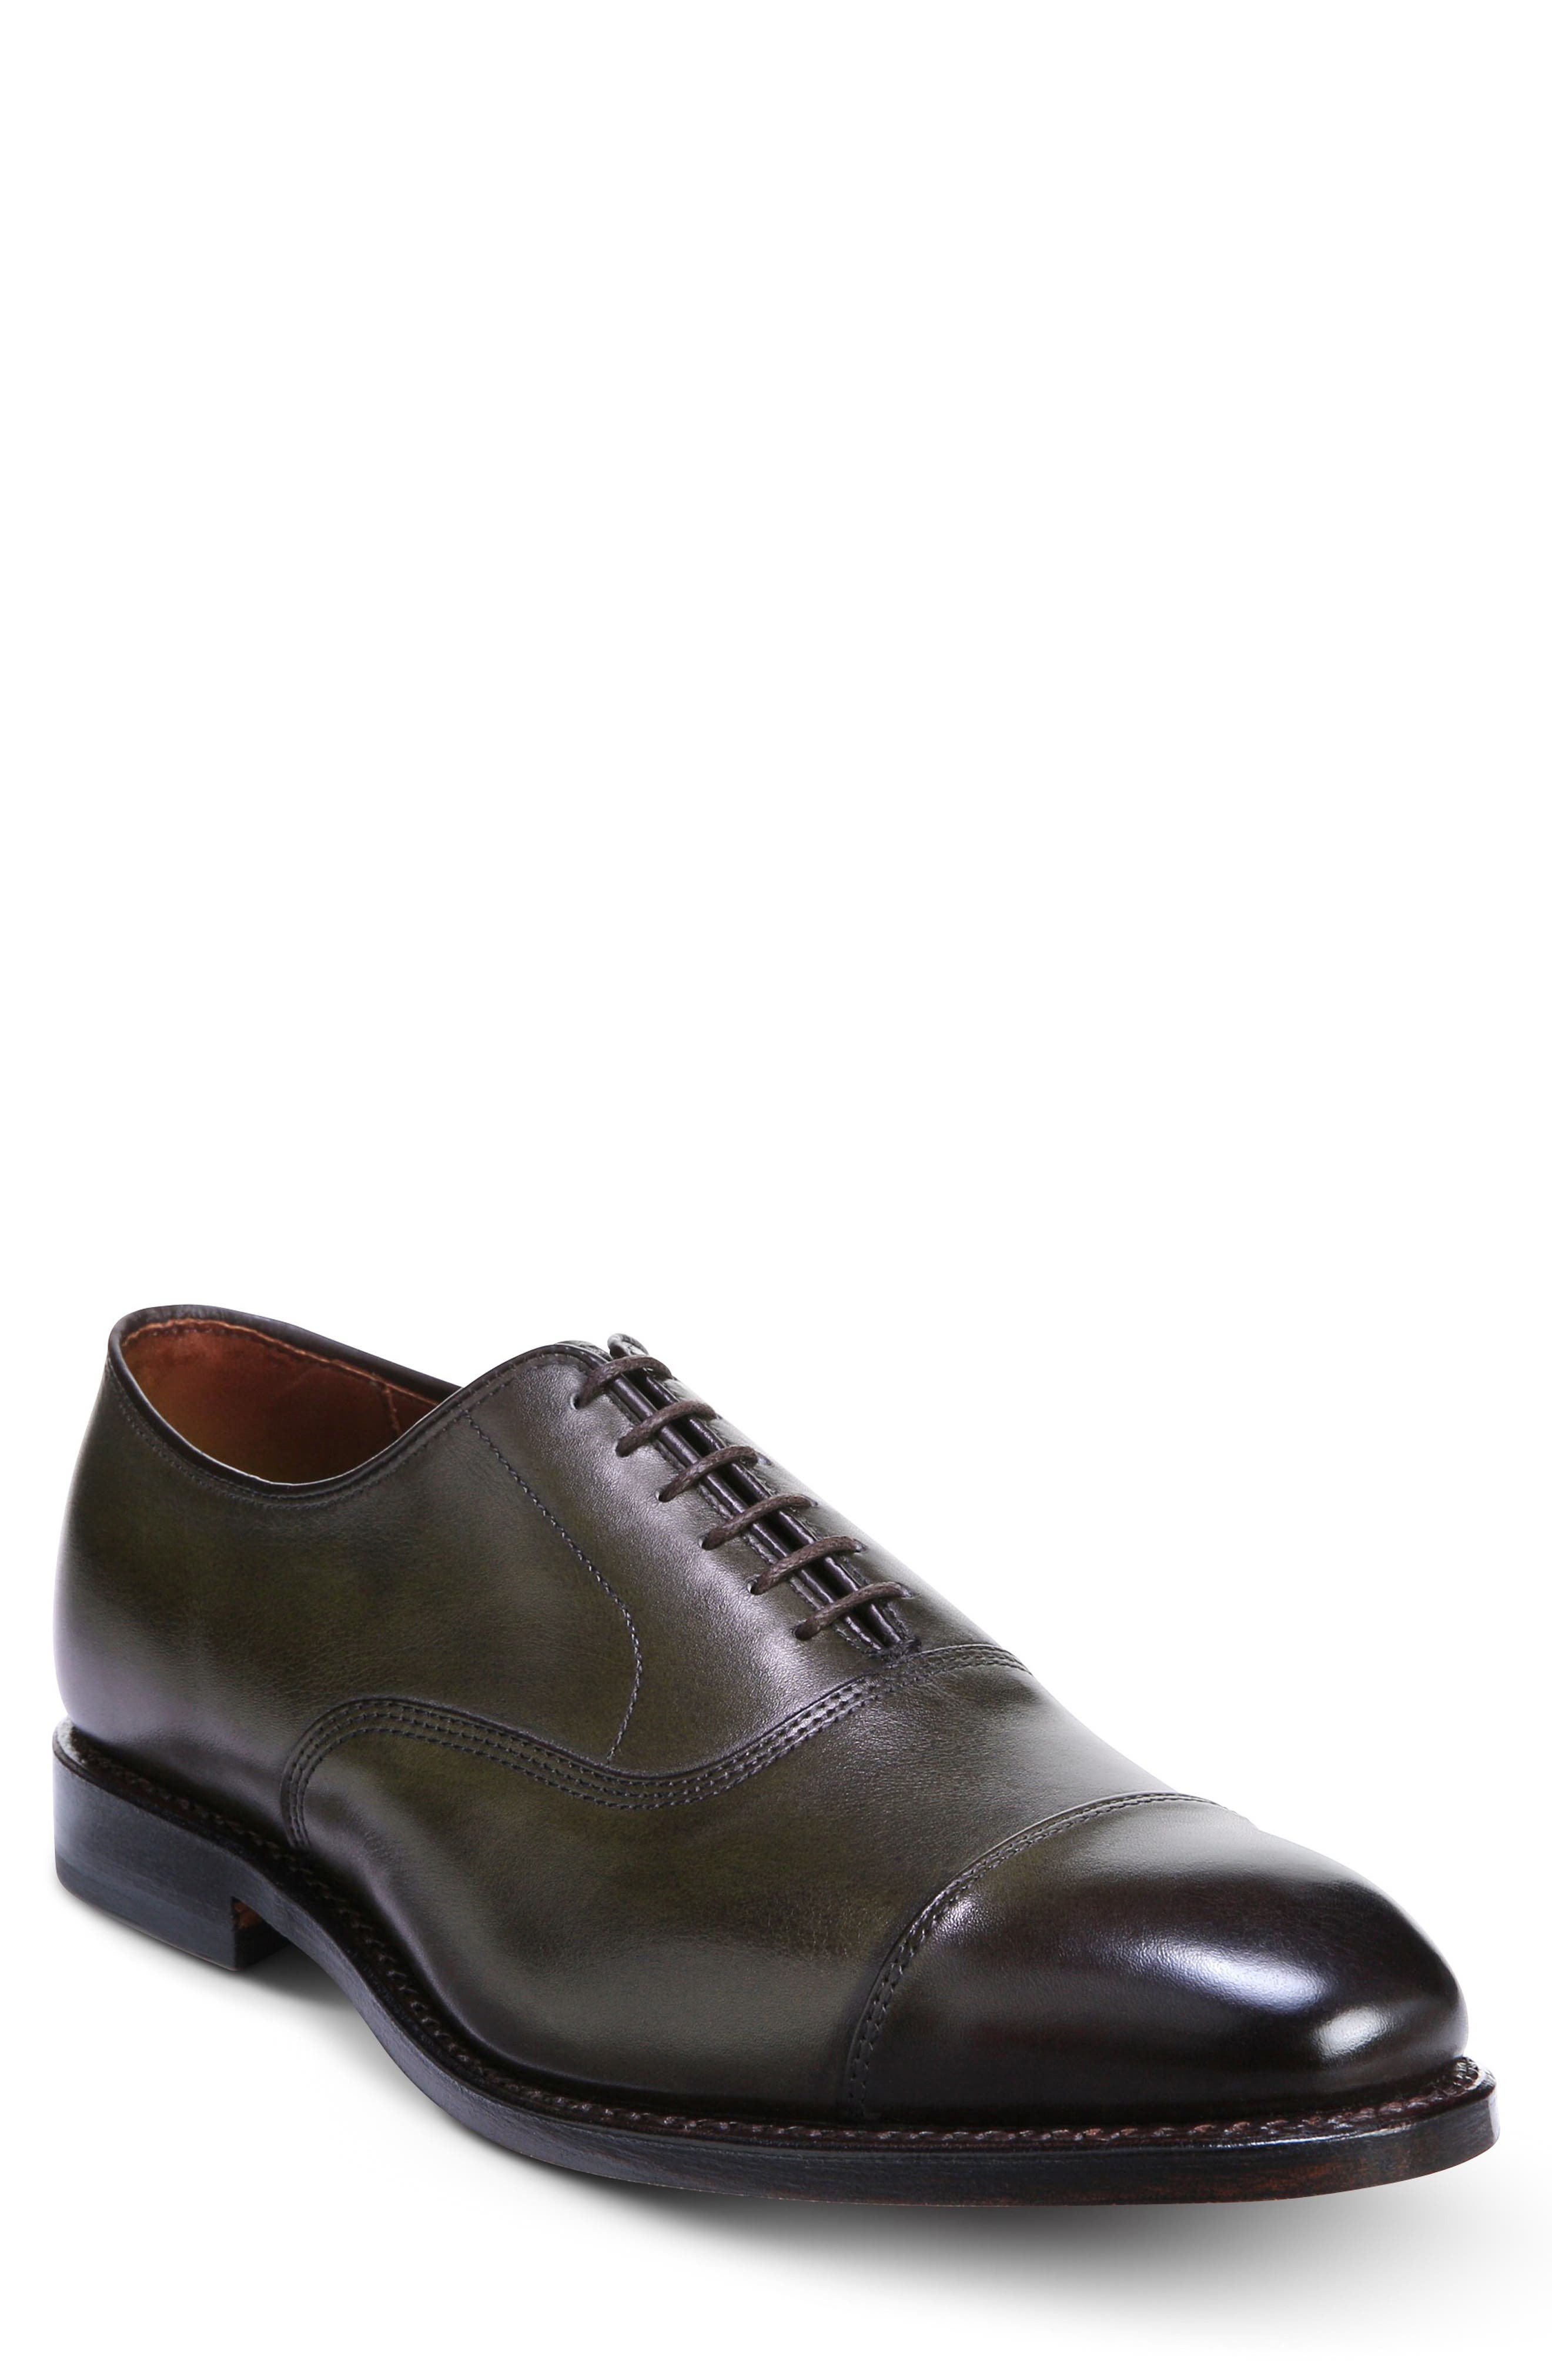 Men's Green Allen Edmonds Shoes | Nordstrom